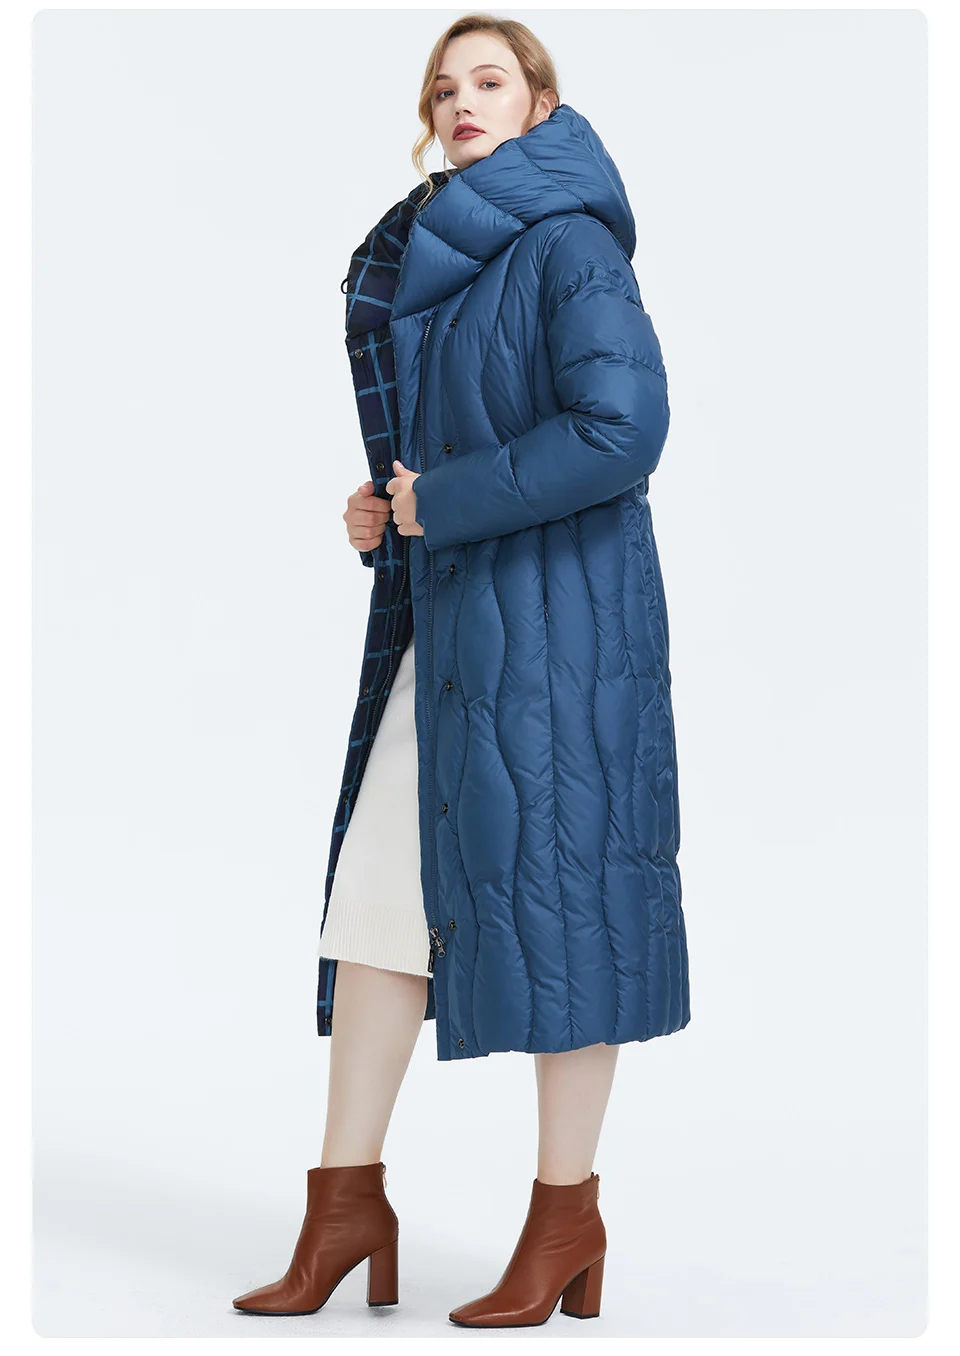 Astrid Зима новое поступление пуховик женская свободная одежда верхняя одежда высокое качество синий цвет толстый хлопок зимнее пальто AR-7051